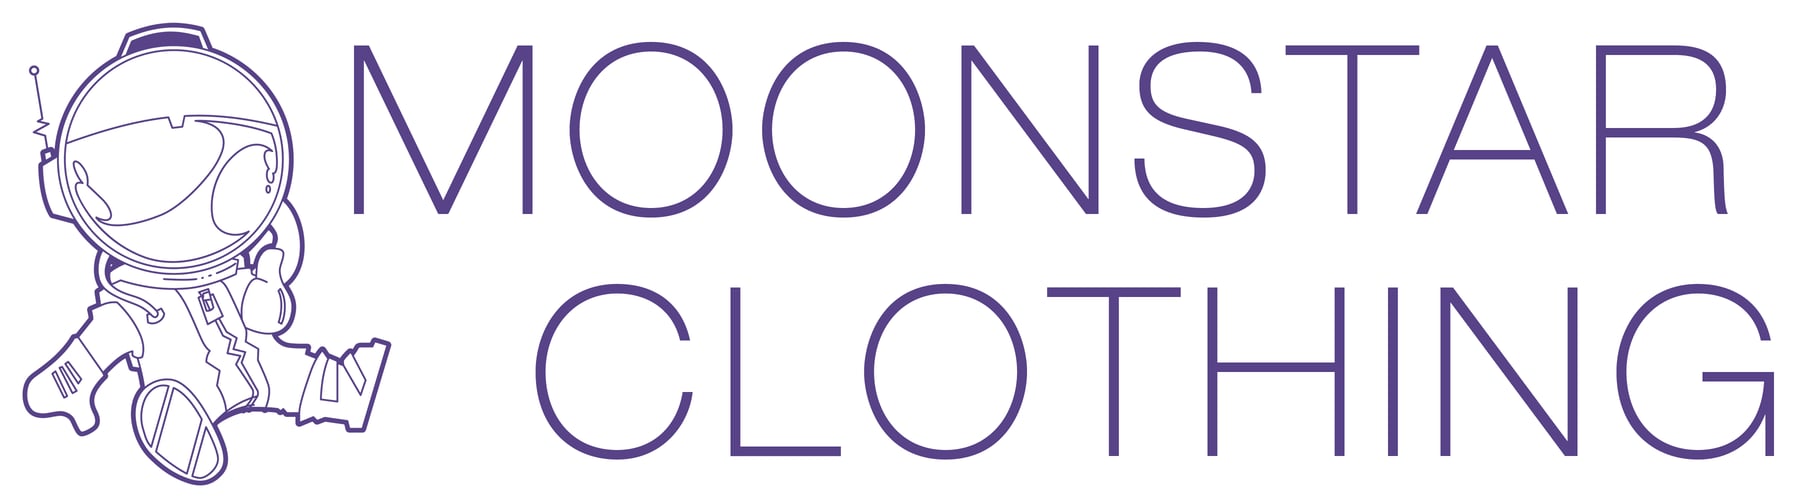 Moonstar Clothing